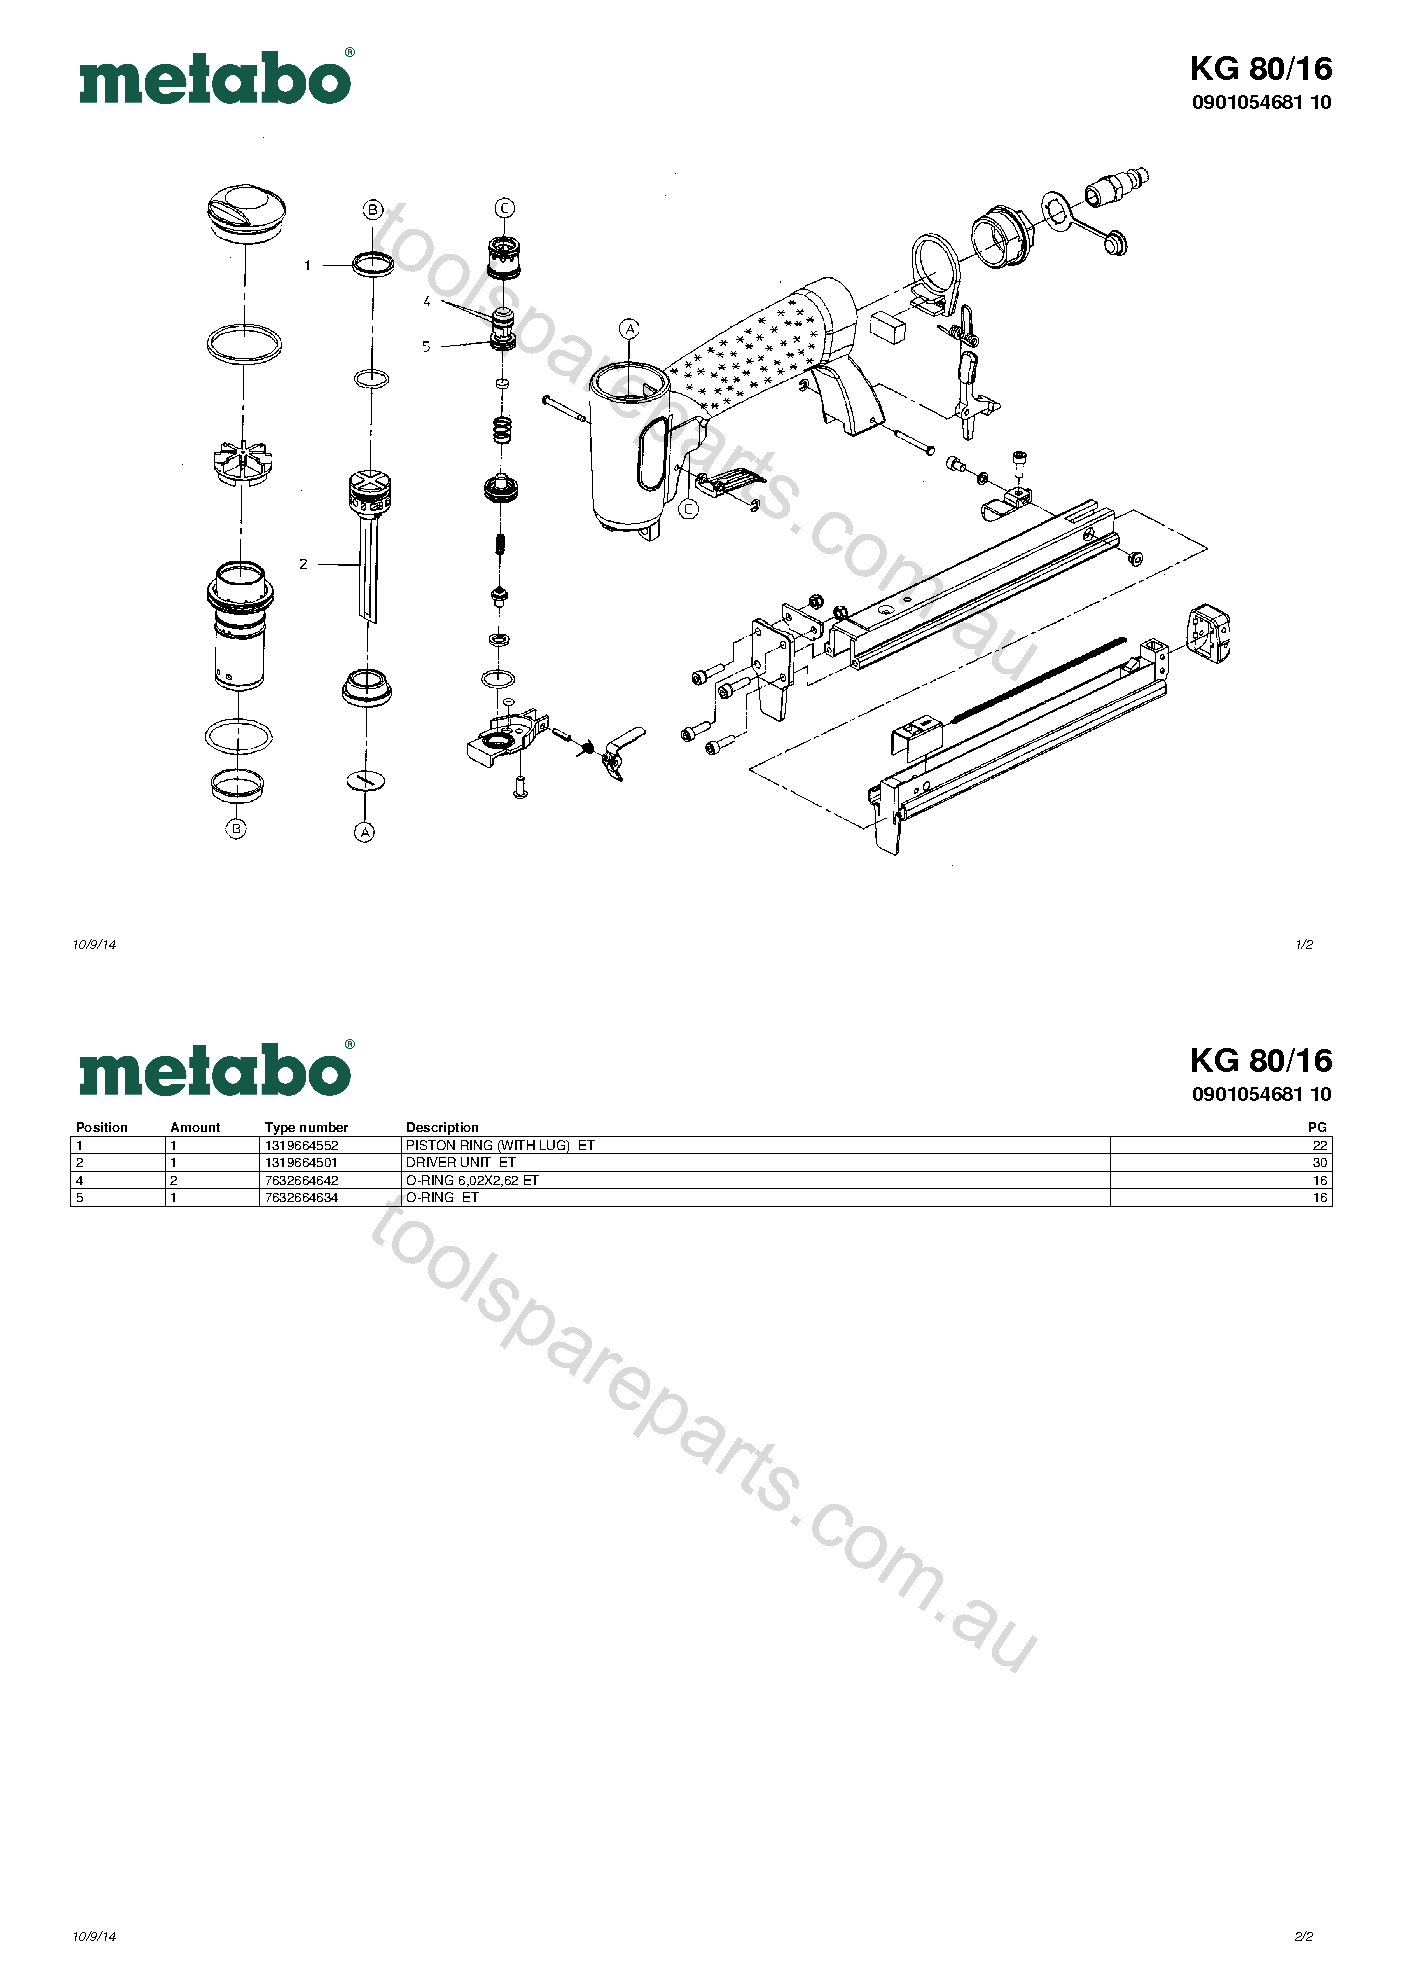 Metabo KG 80/16 0901054681 10  Diagram 1